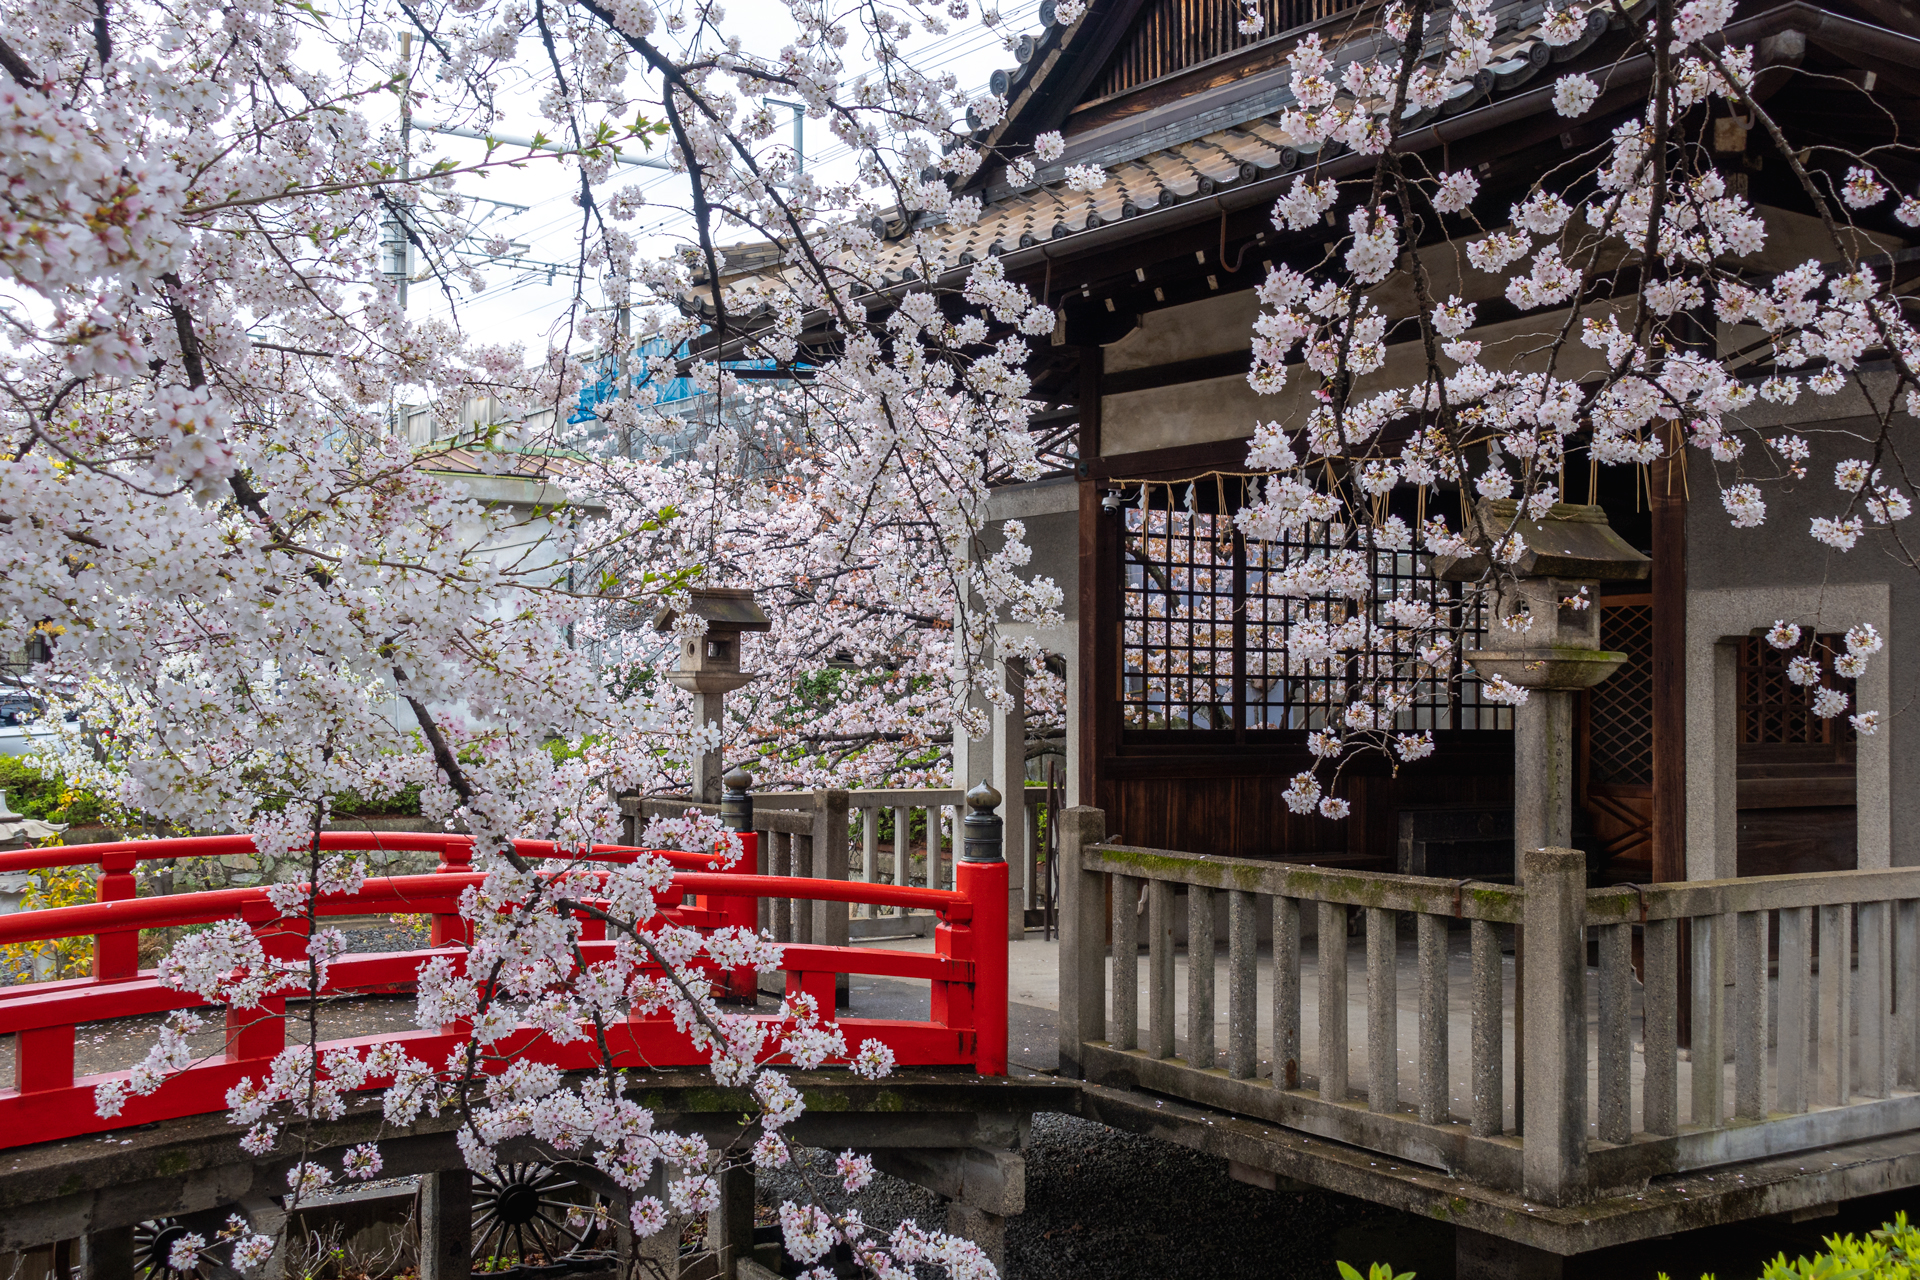 DSC05242 京都府 六孫王神社(桜と灯籠の景色が美しい春におすすめ写真スポット! 撮影した写真の紹介、アクセス情報など)